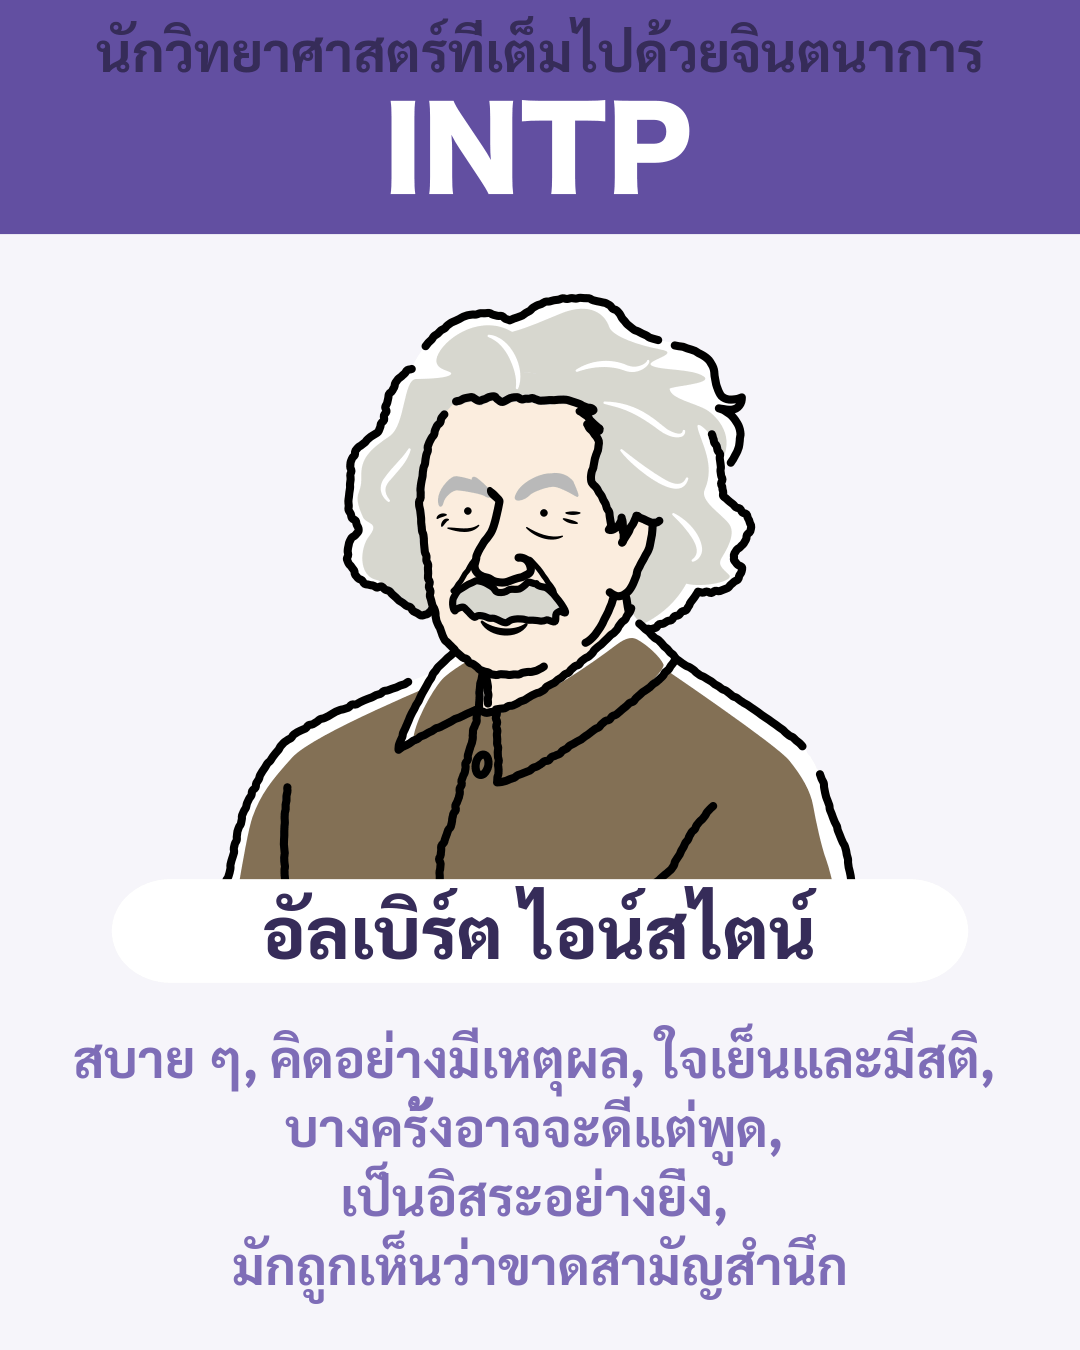 อัลเบิร์ต ไอน์สไตน์ - INTP